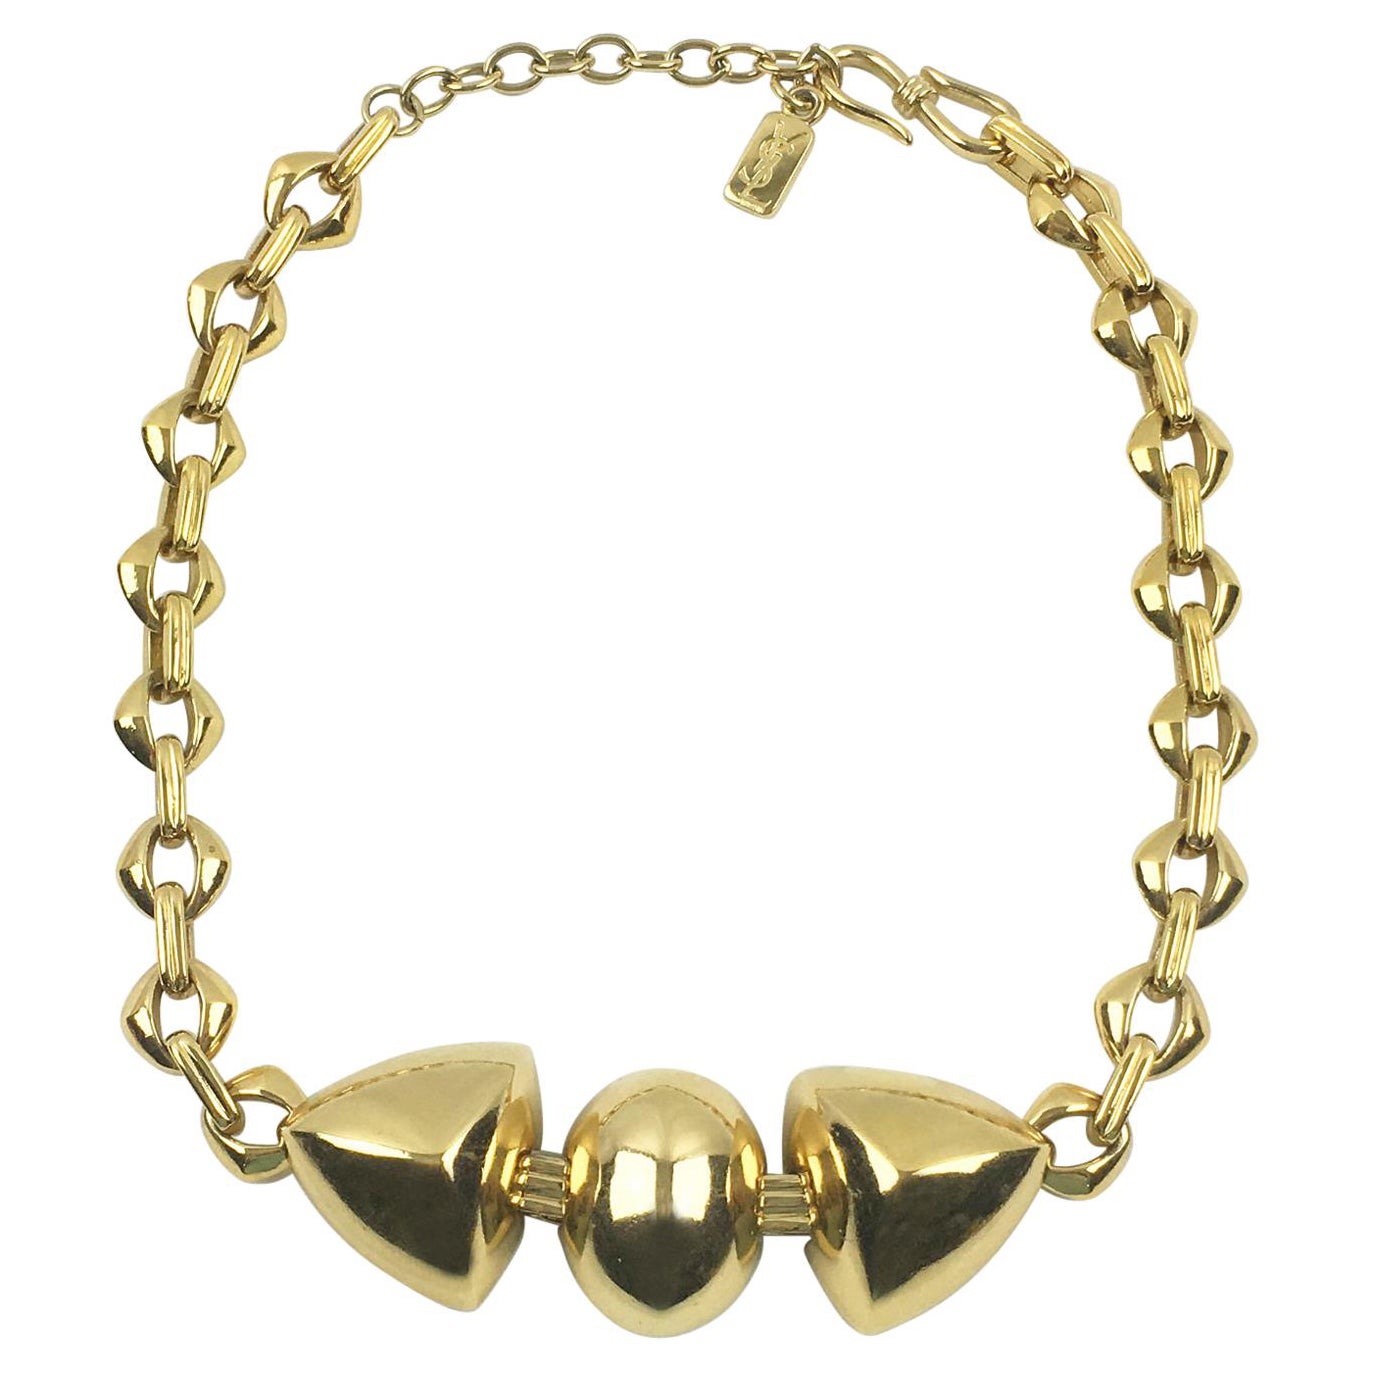 Yves Saint Laurent Paris Gilt Metal Link Choker Necklace